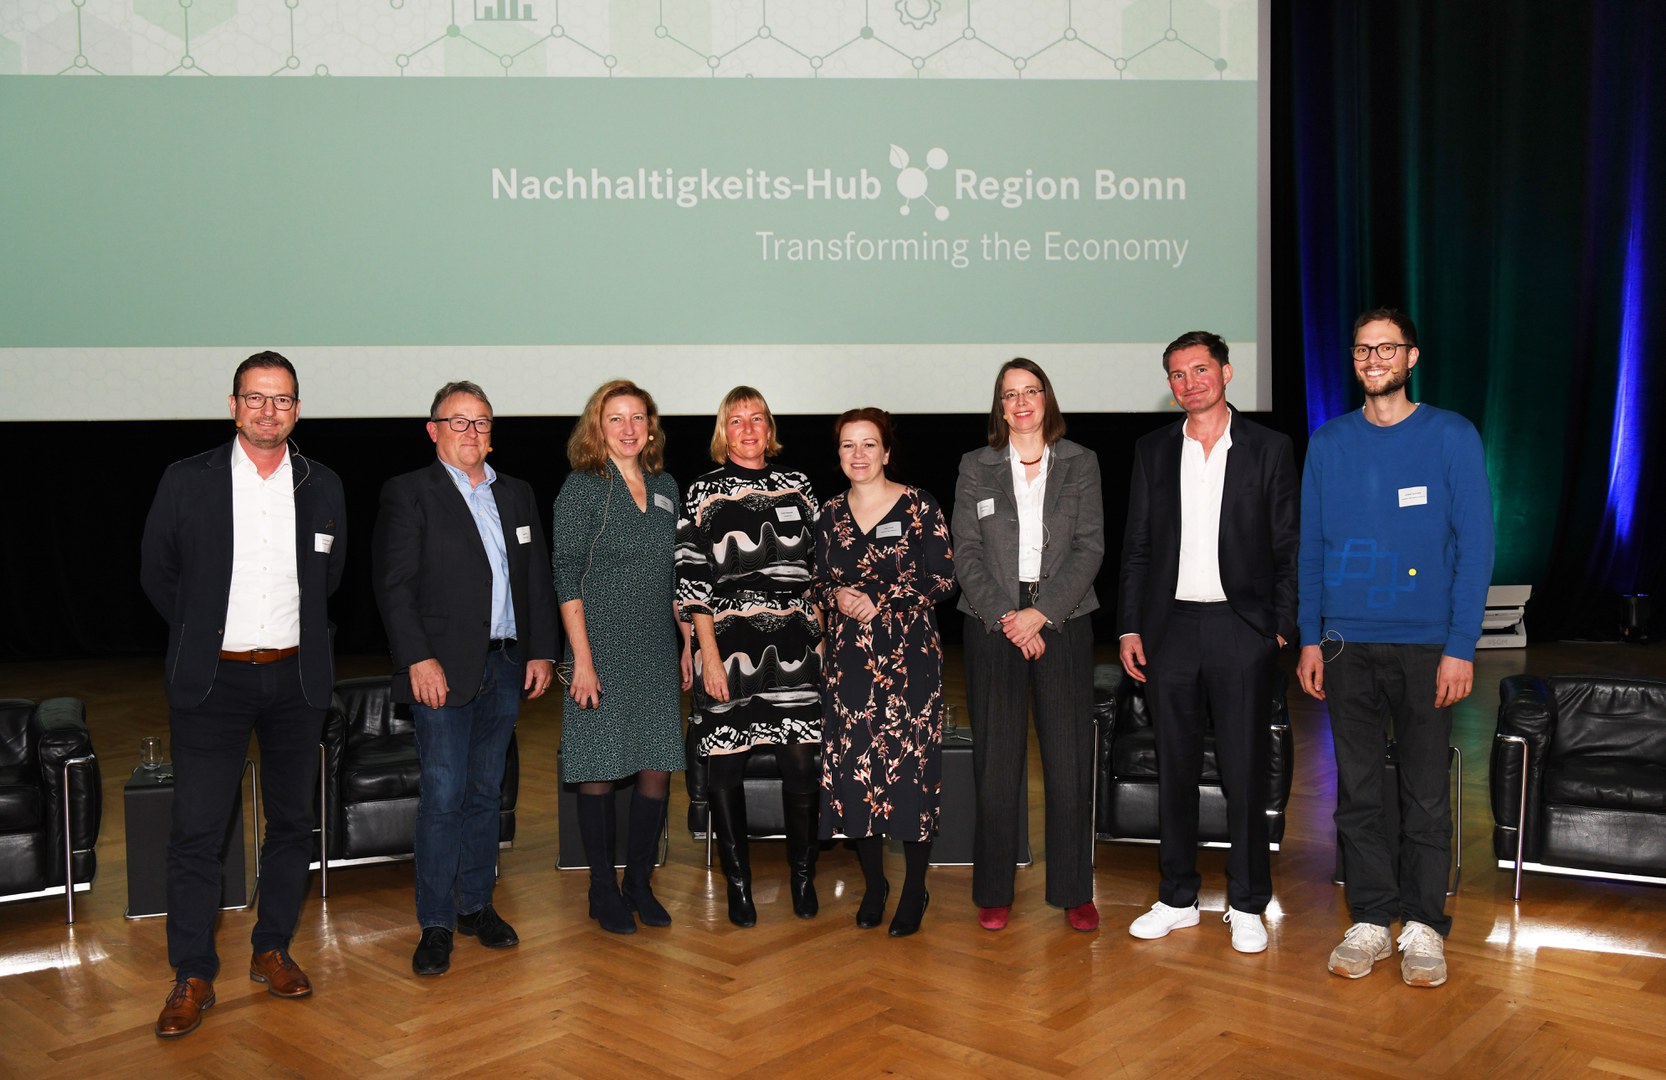 Die Teilnehmer*innen der Podiumsdiskussion anlässlich der Kick-off-Veranstaltung für den Nachhaltigkeits-Hub Region Bonn